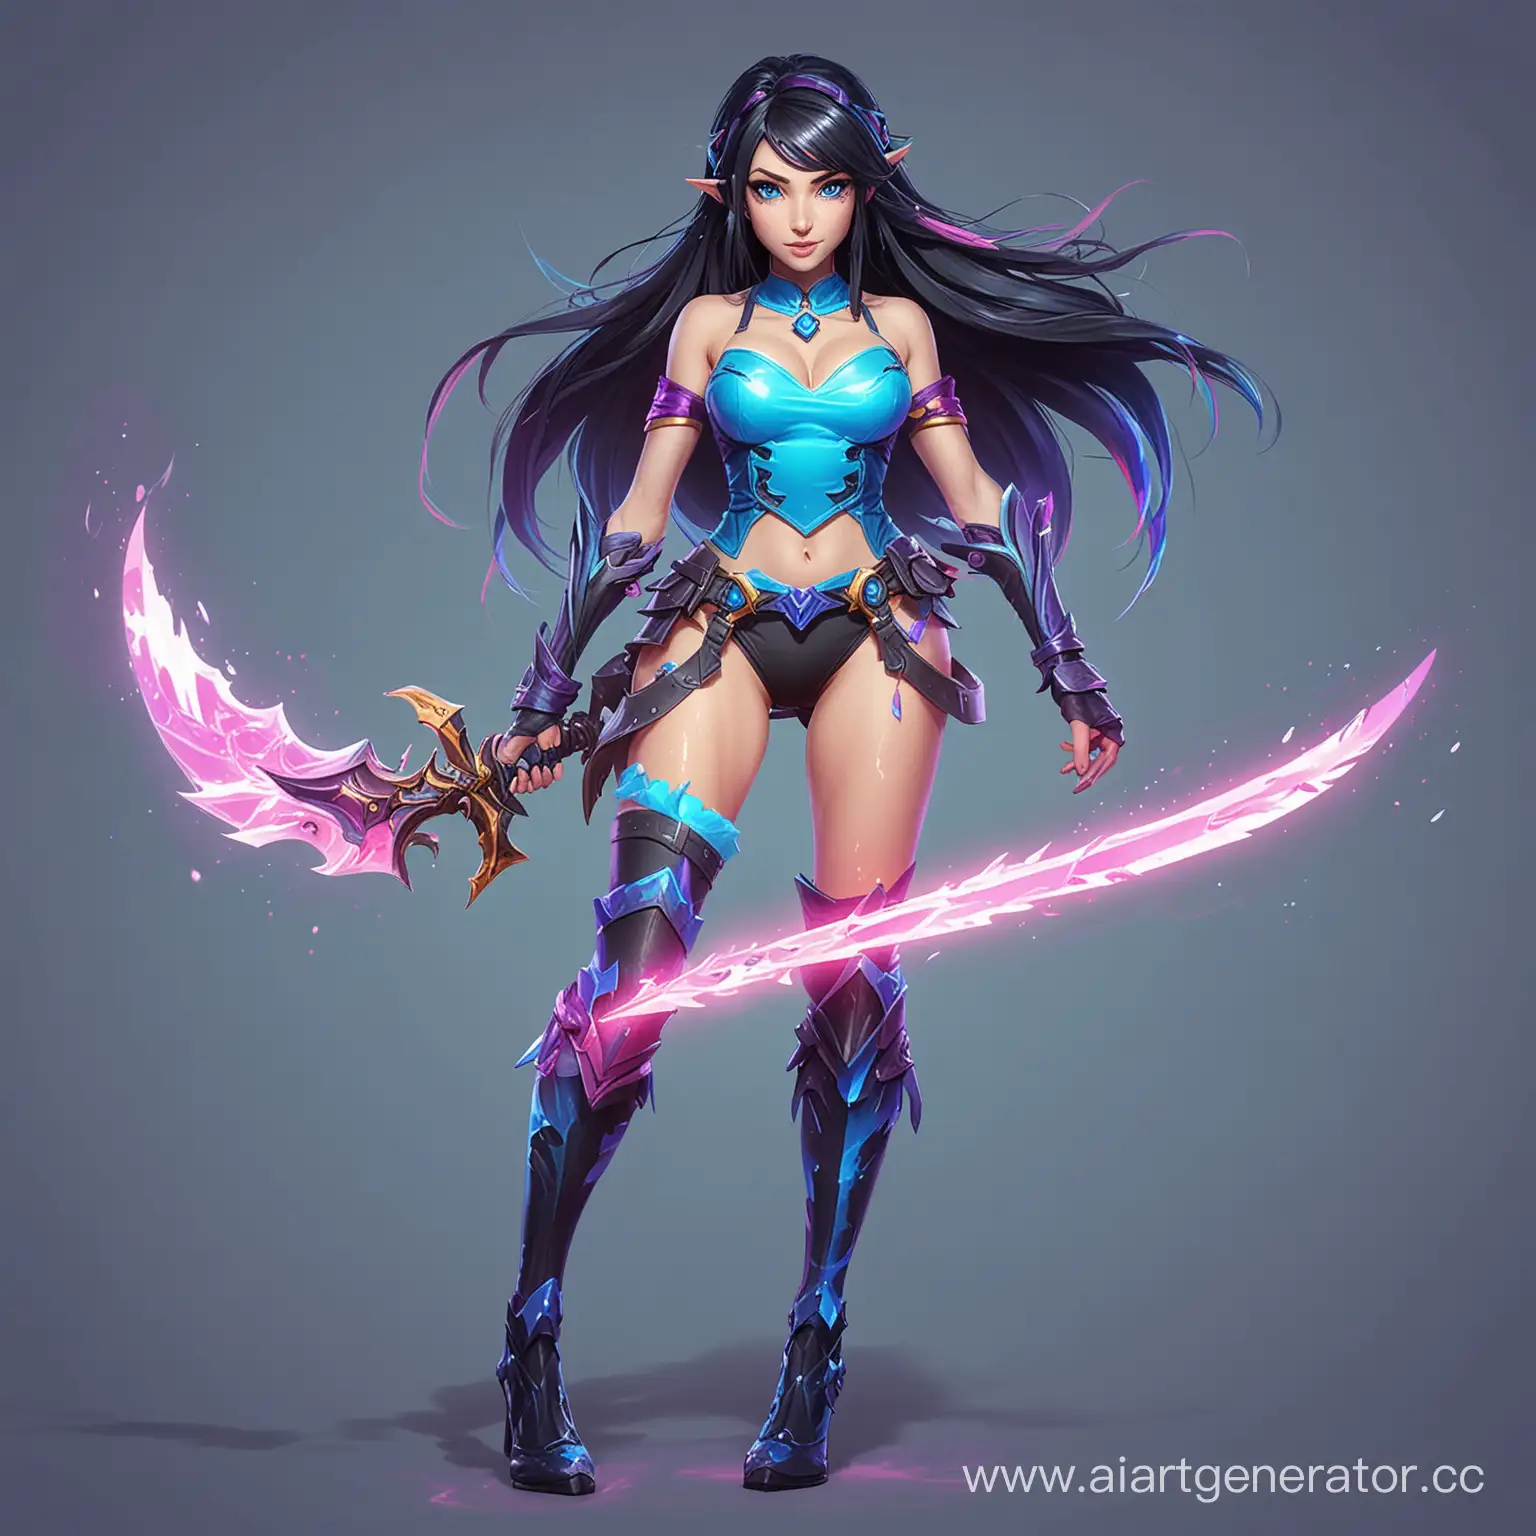 Девушка из League of Legends, обладает магическим клинком и состоит из липкой жижи неонового цвета, с черными волосами и голубыми глазами в полный рост с ногами, на однотонном фоне. в более мультяшном стиле